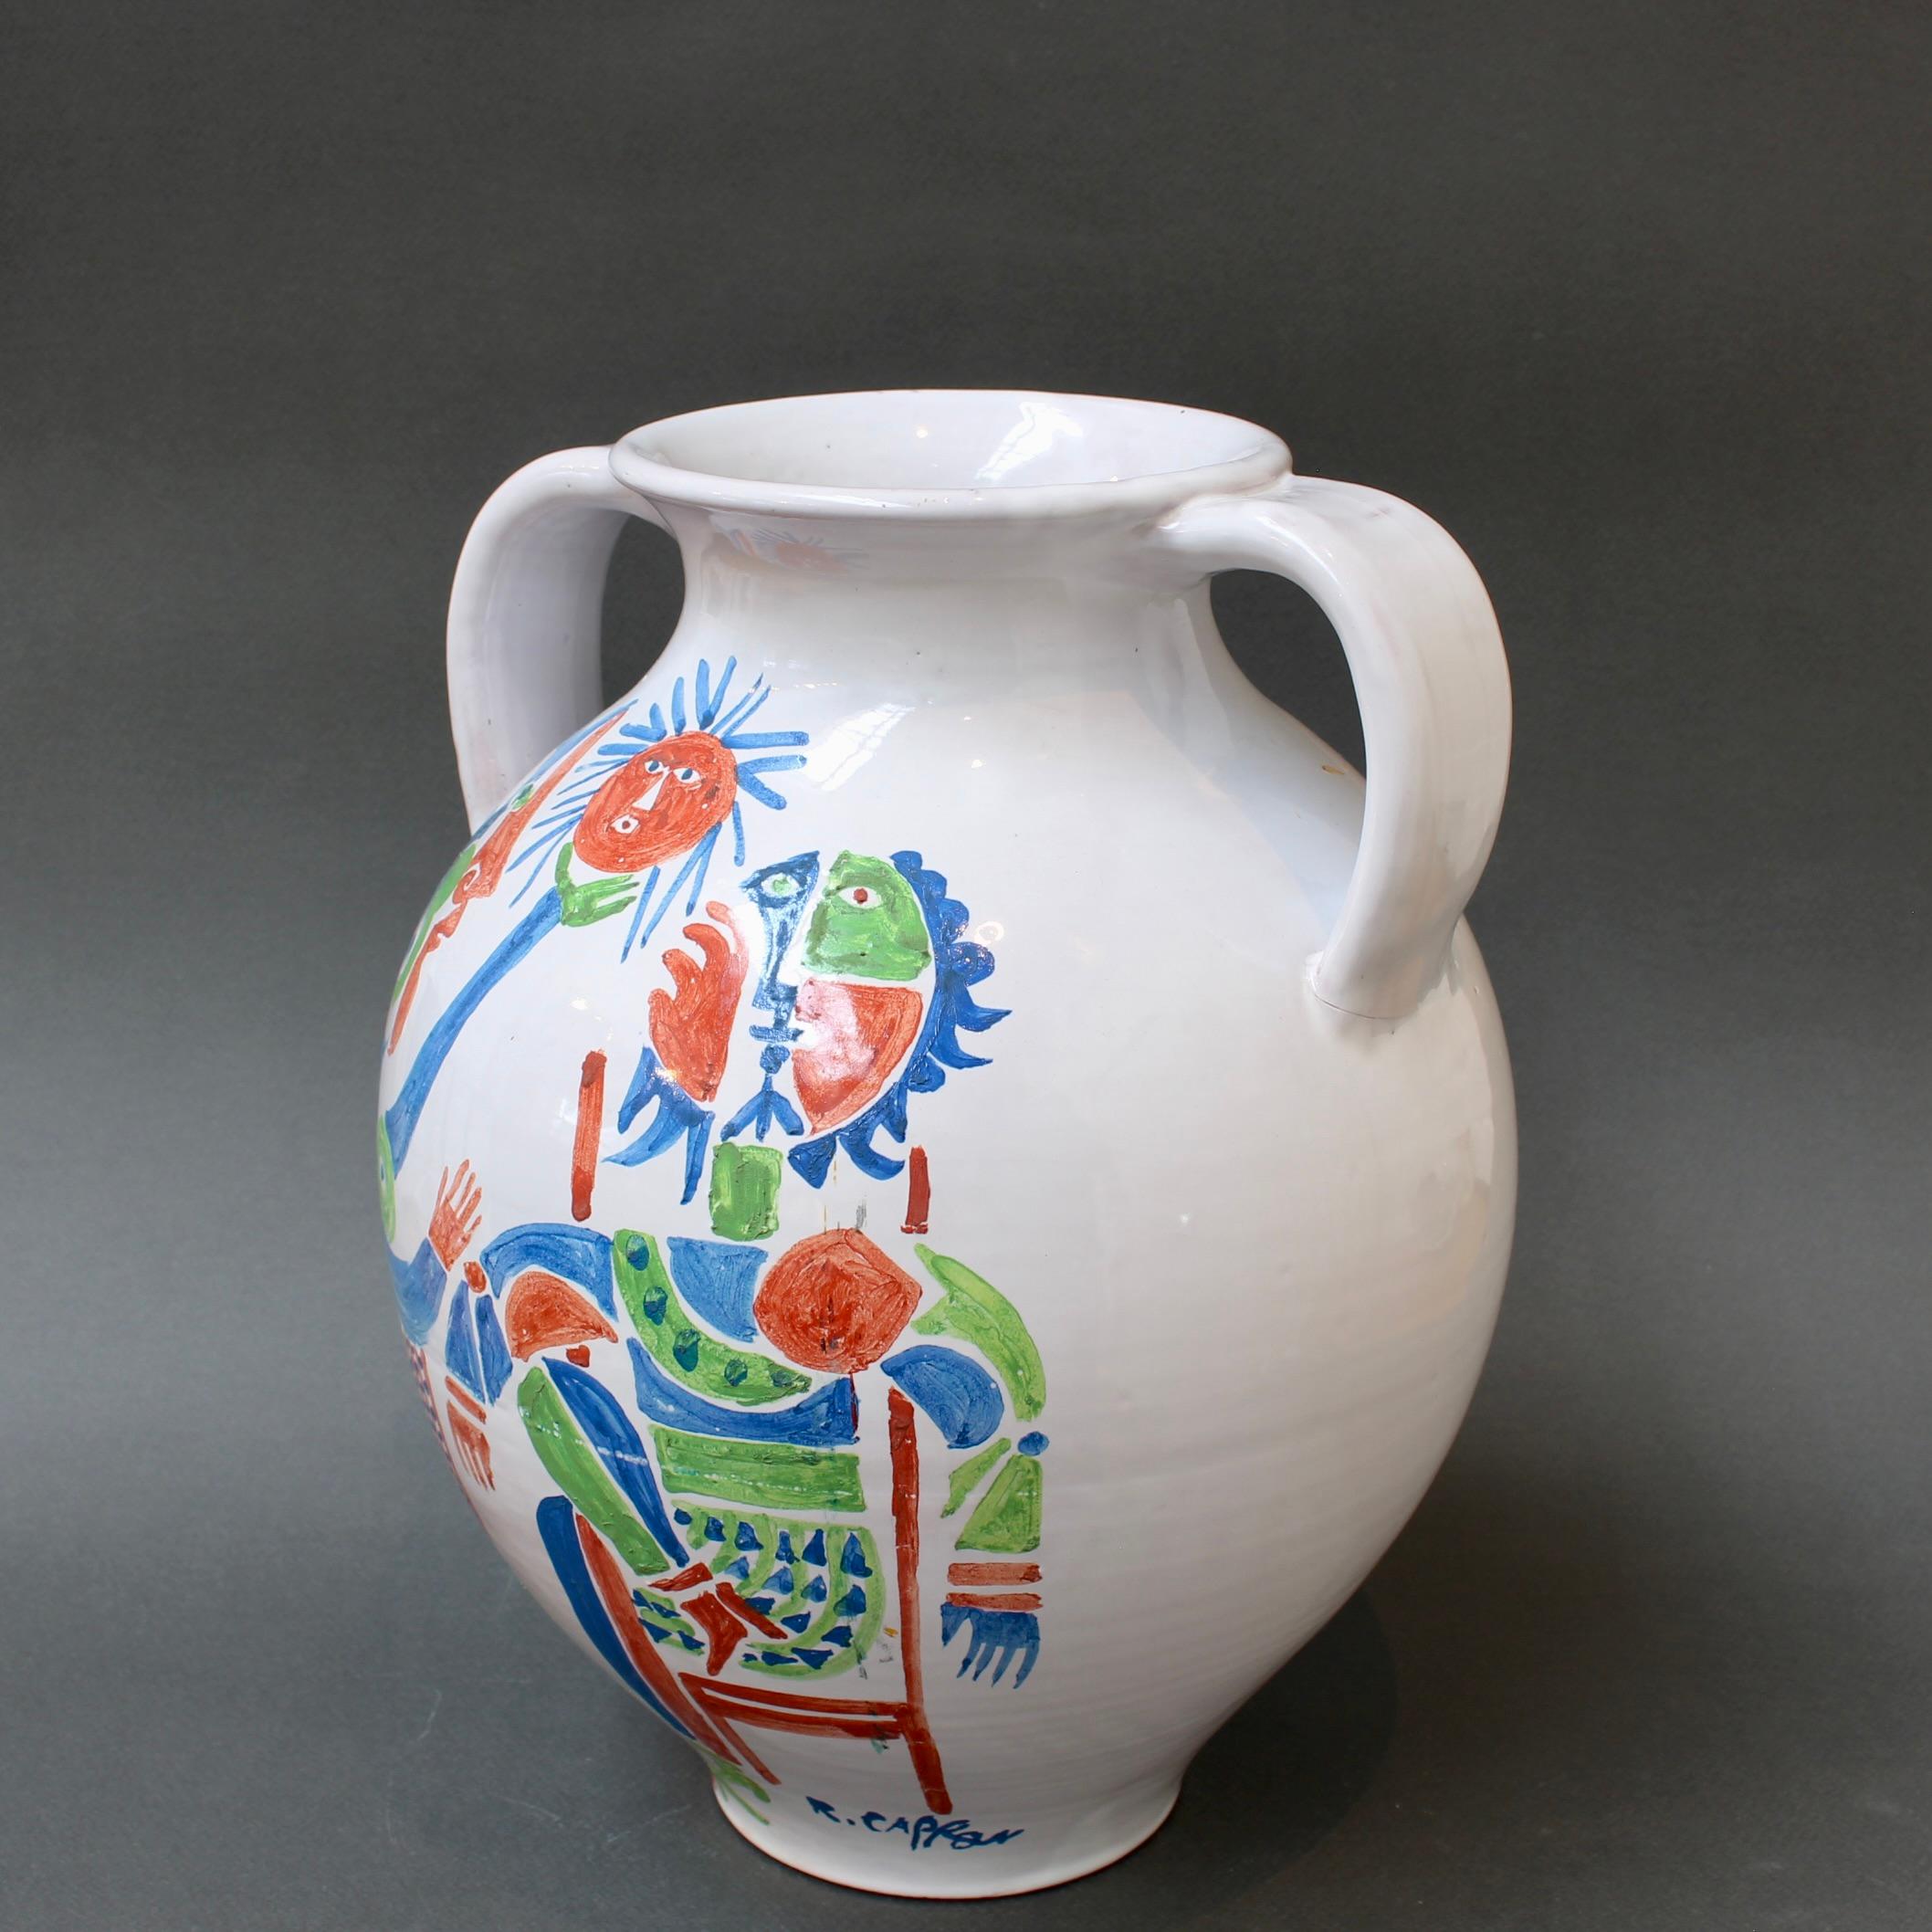 Handbemalte Vintage-Vase aus französischer Keramik des Keramikers Roger Capron (ca. 1960er Jahre). Die gemalten Figuren sind sicherlich von Picasso inspiriert, der sich ebenfalls in Vallauris, Frankreich, aufhielt, während Caprons Studio in